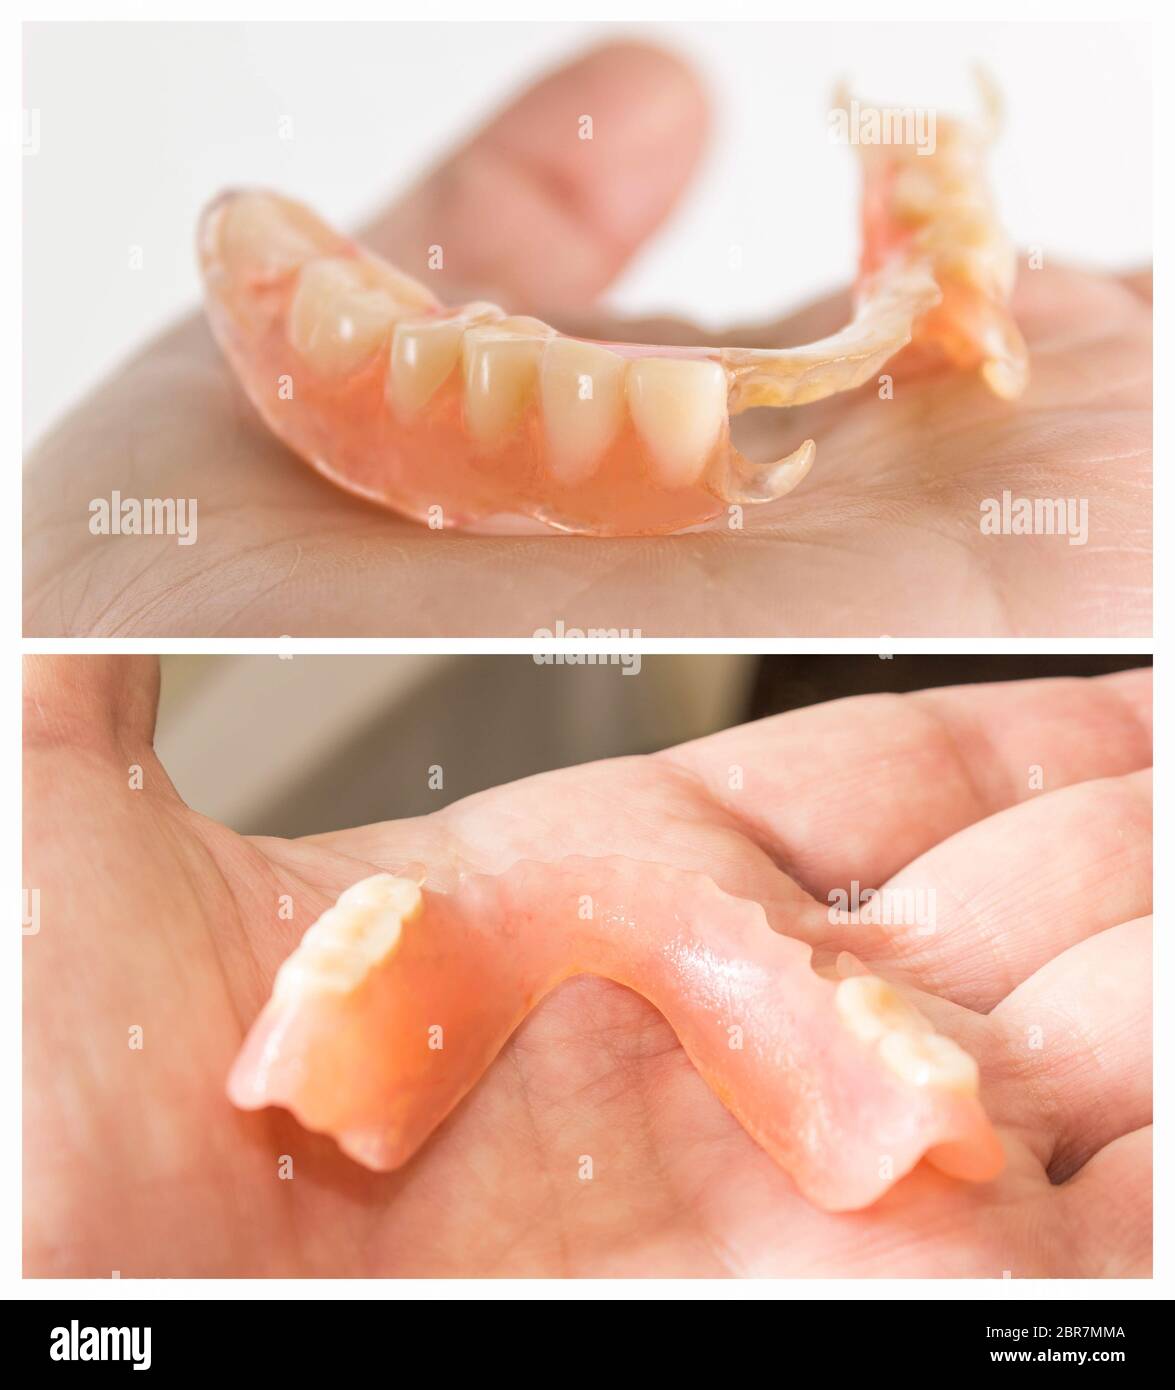 En nylon flexible prothèse sur la main des hommes. Dentiers amovibles souples, dépourvue de nylon, exempt de monomère hypoallergénique Banque D'Images